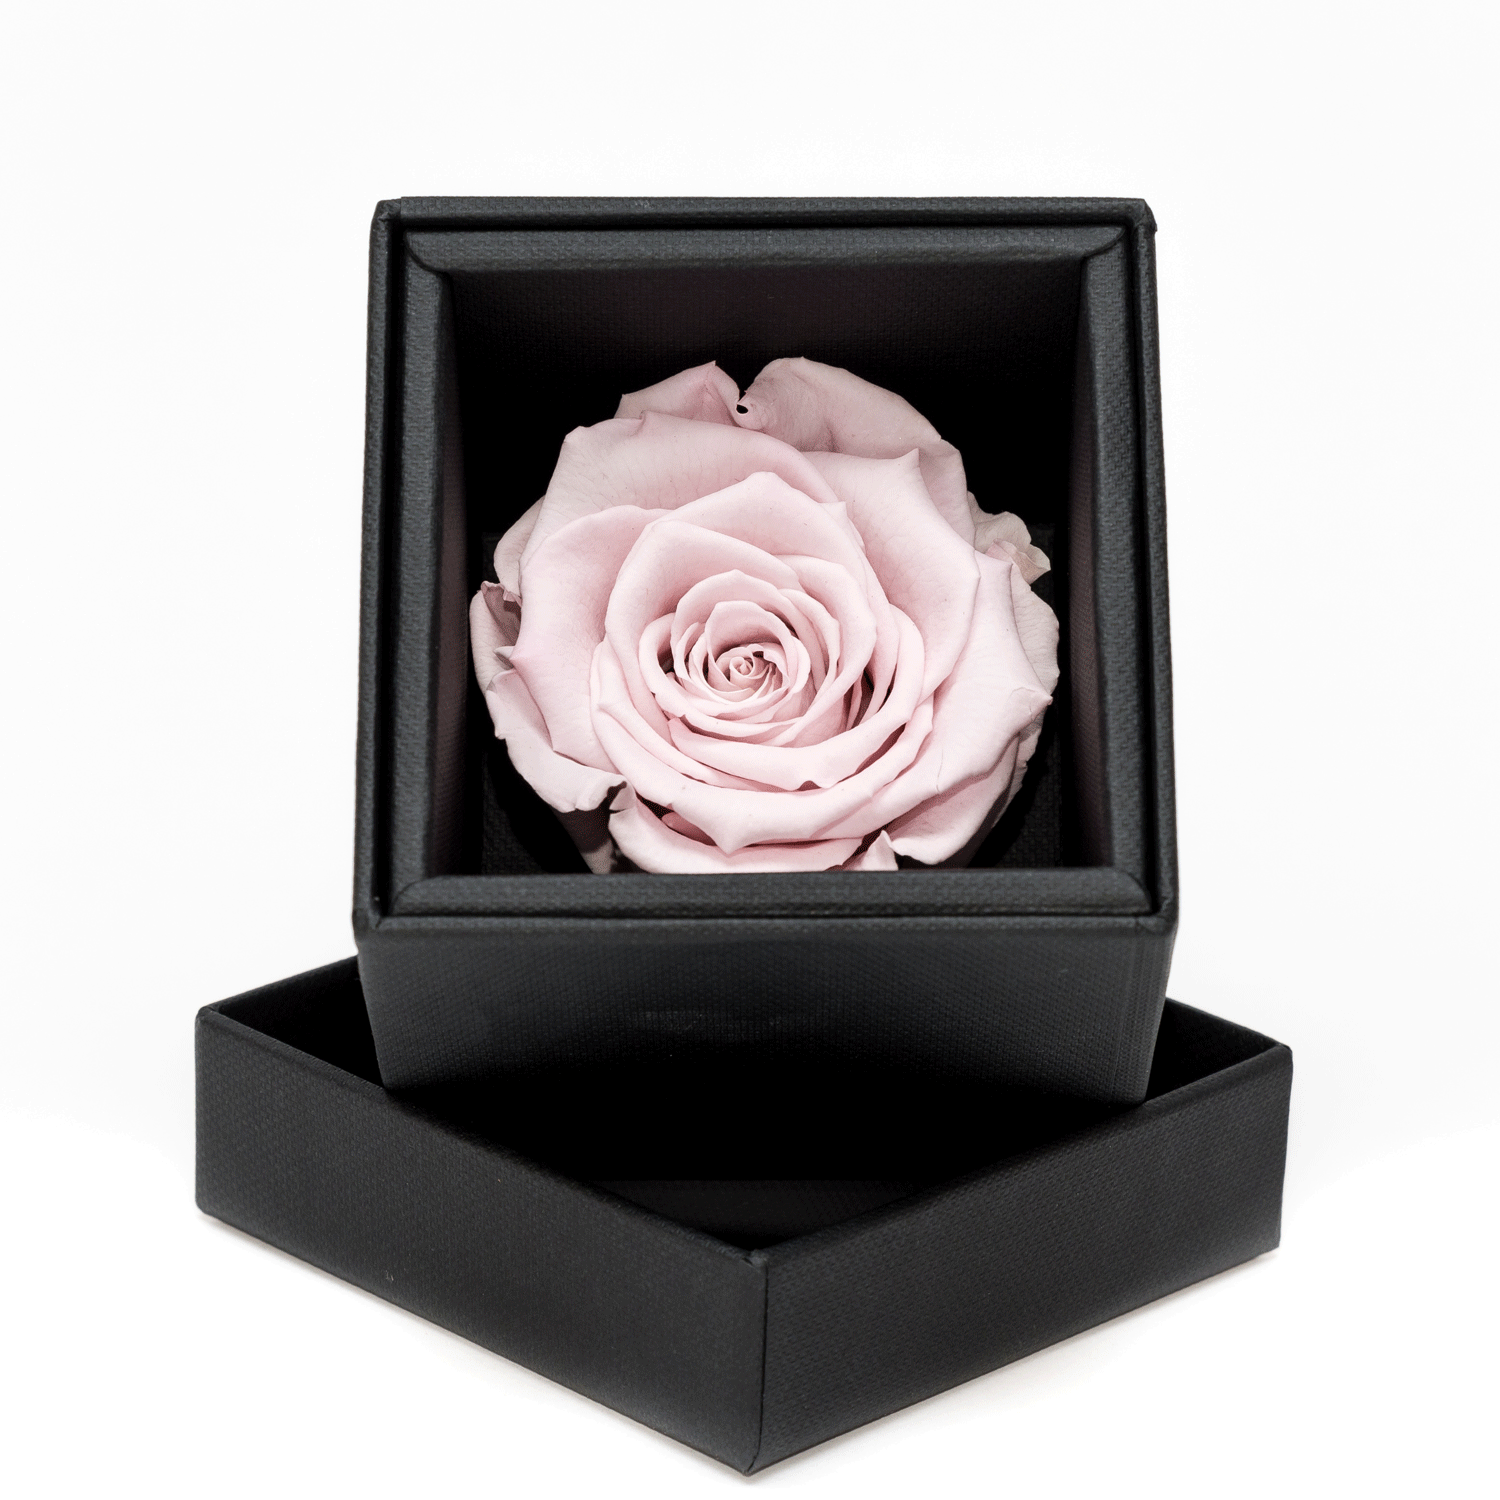 Rosa di colore rosa stabilizzata con scatola nera elegante